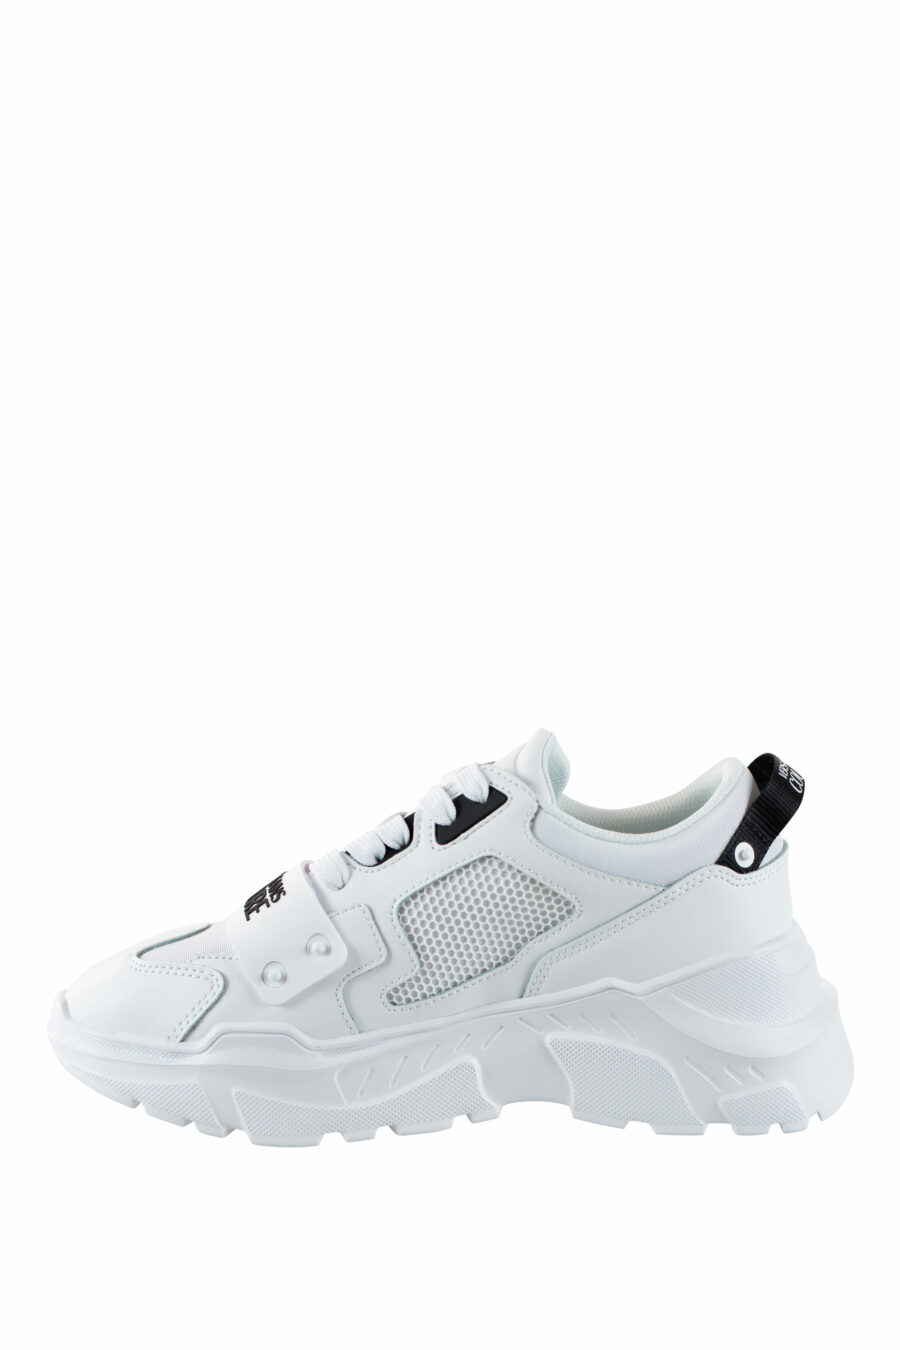 Zapatillas blancas "speedtrack" con detalles negros - IMG 4544